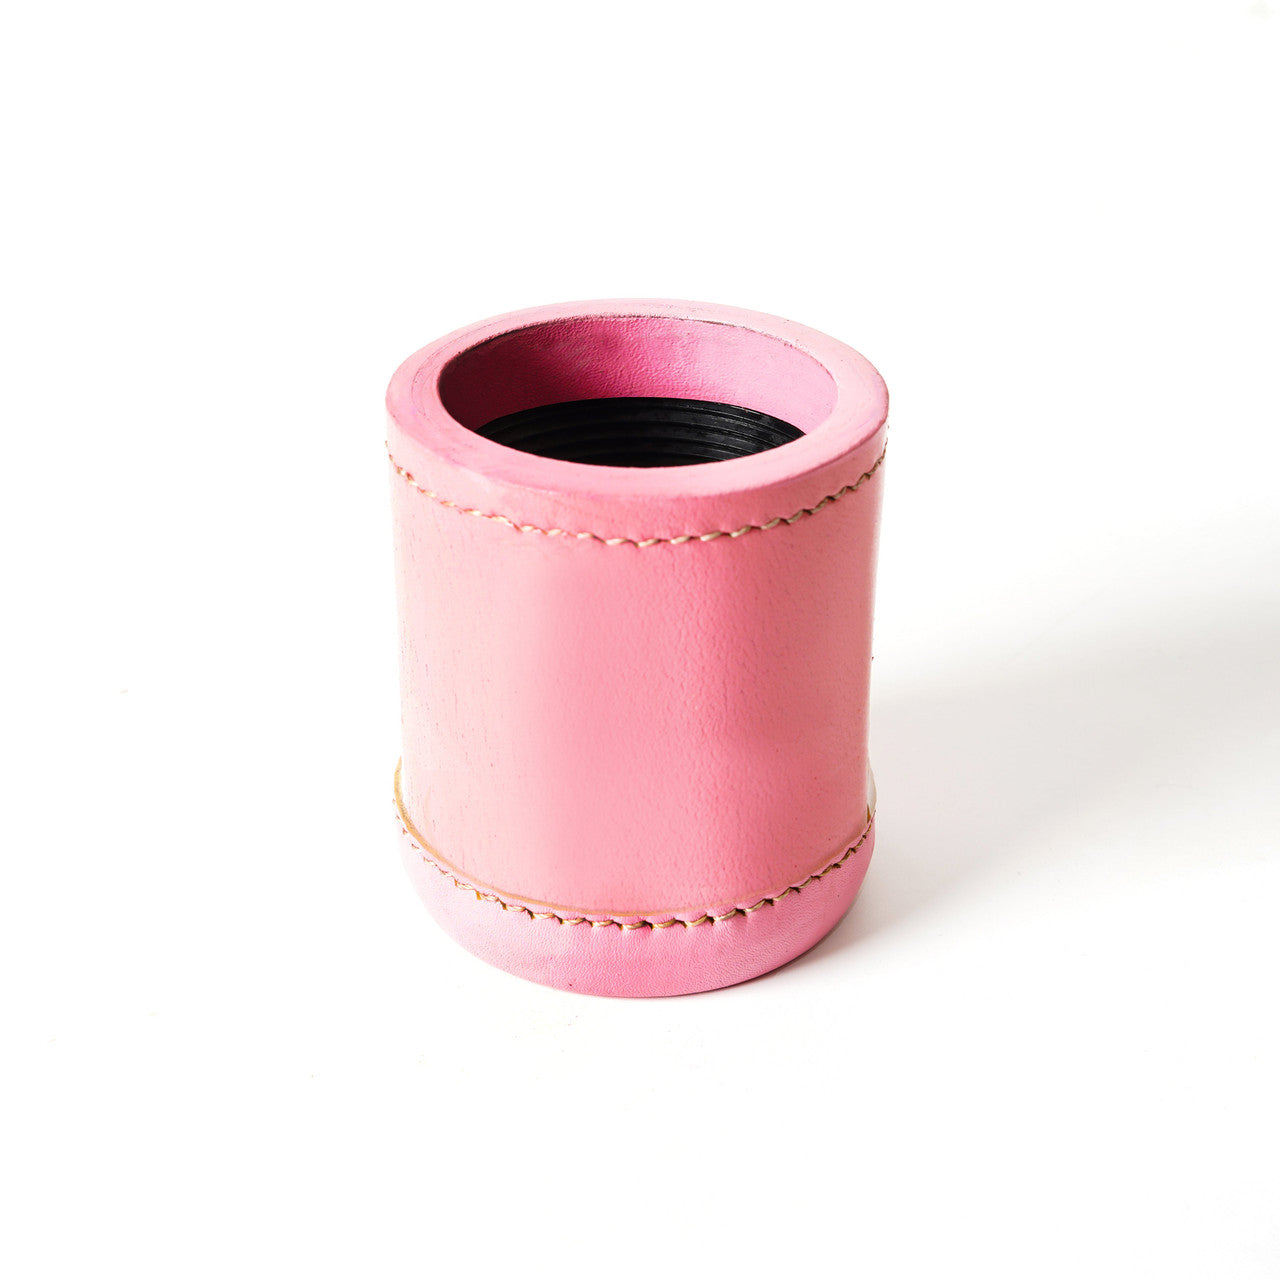 dice cup,leather dice cup,pink dice cup,farkle dice cup